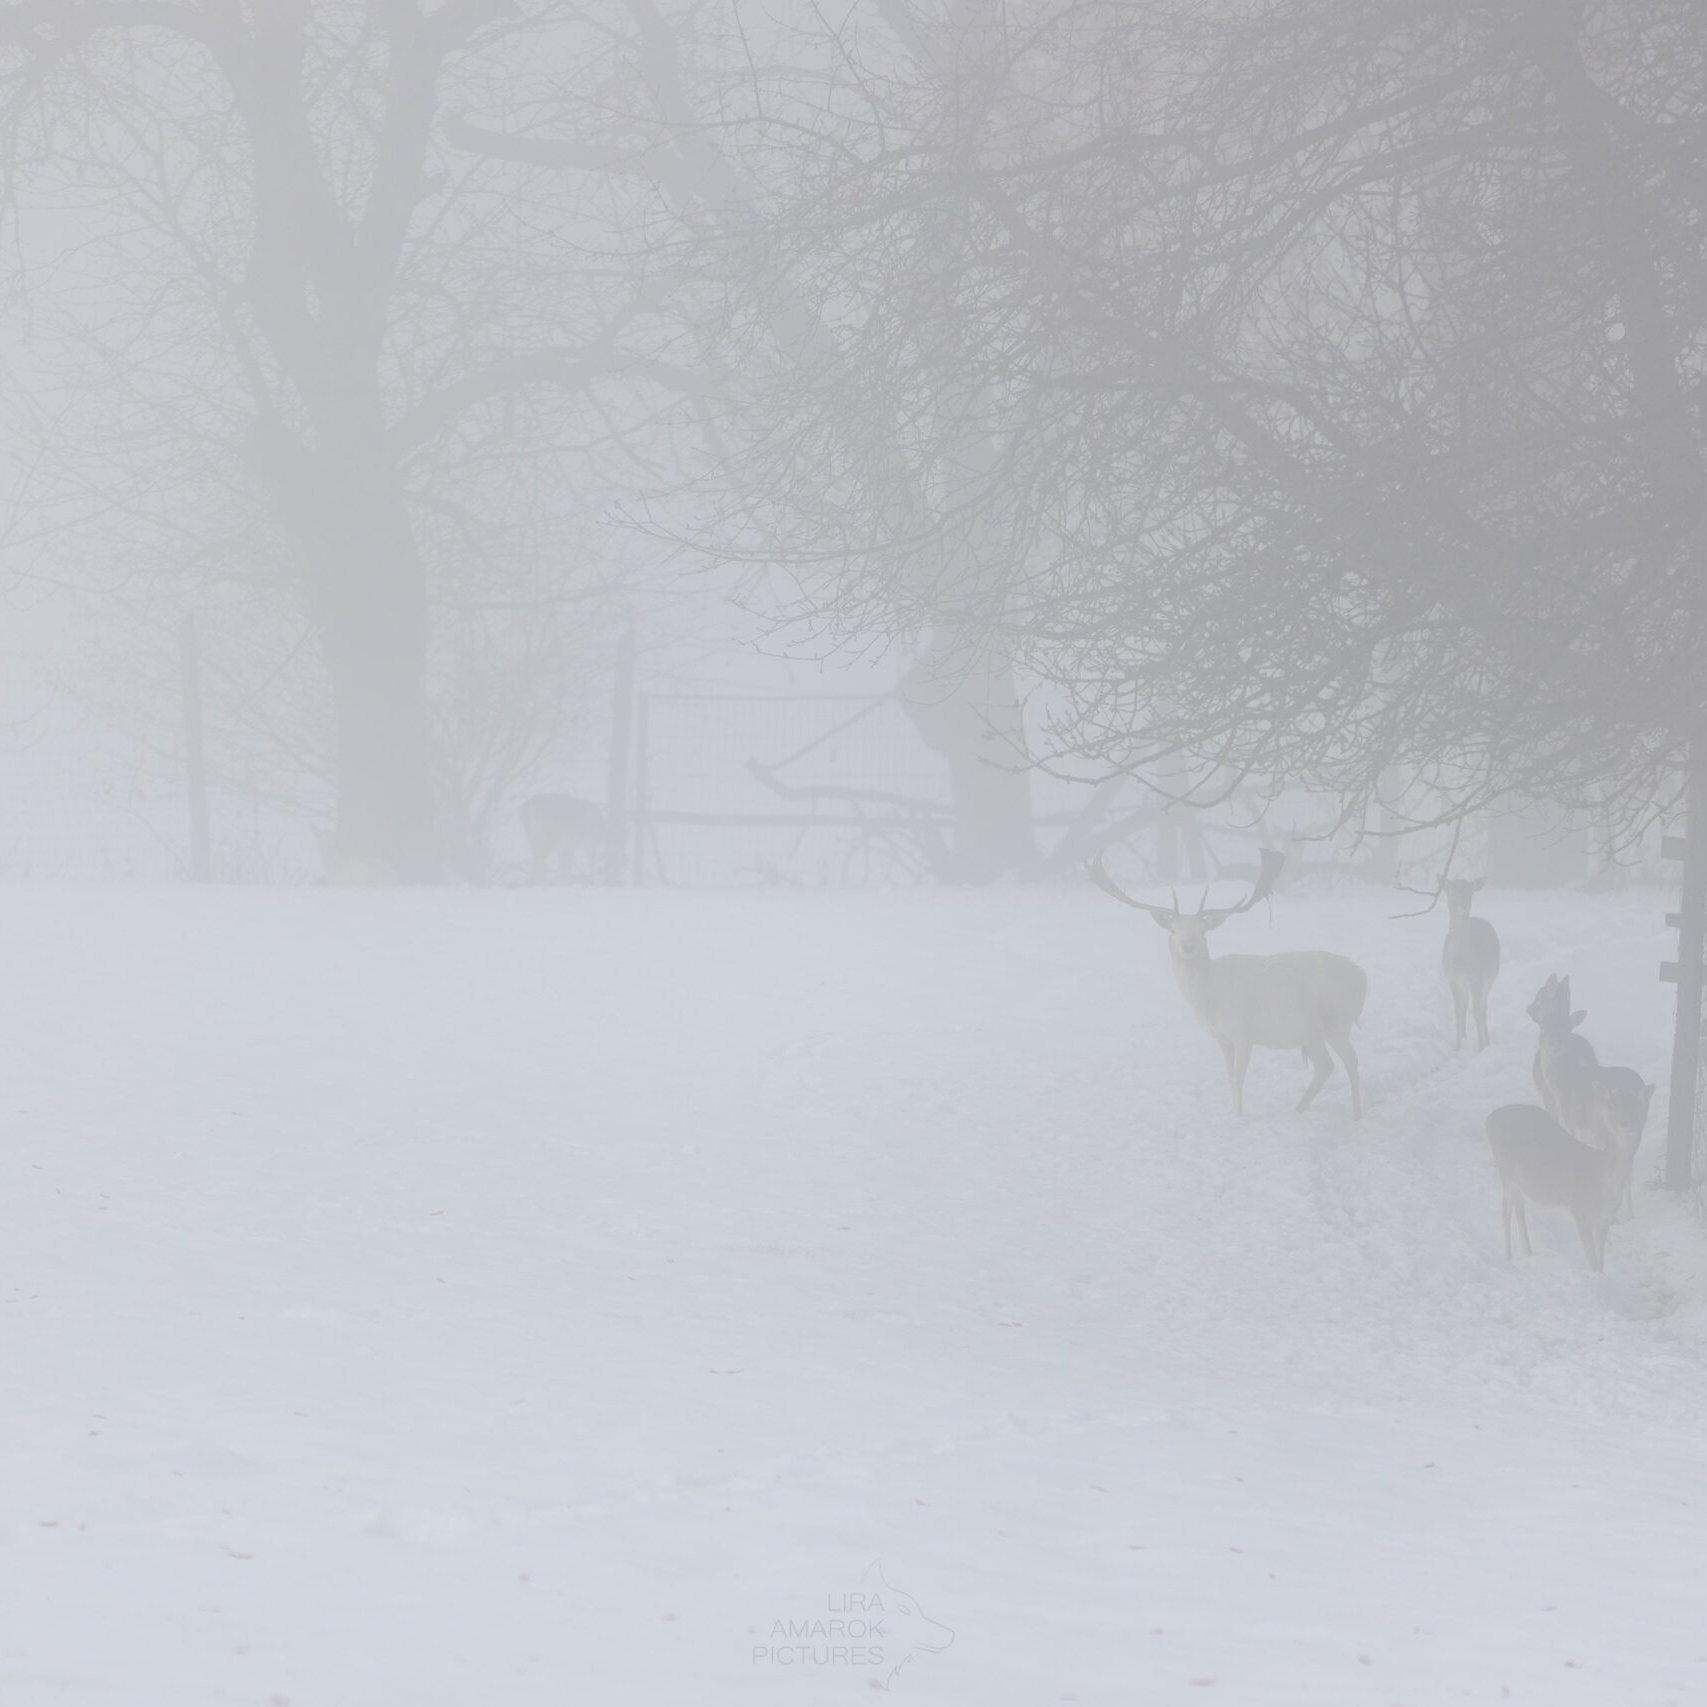 weißer Damhirsch im Nebel mit Schnee im Gehege